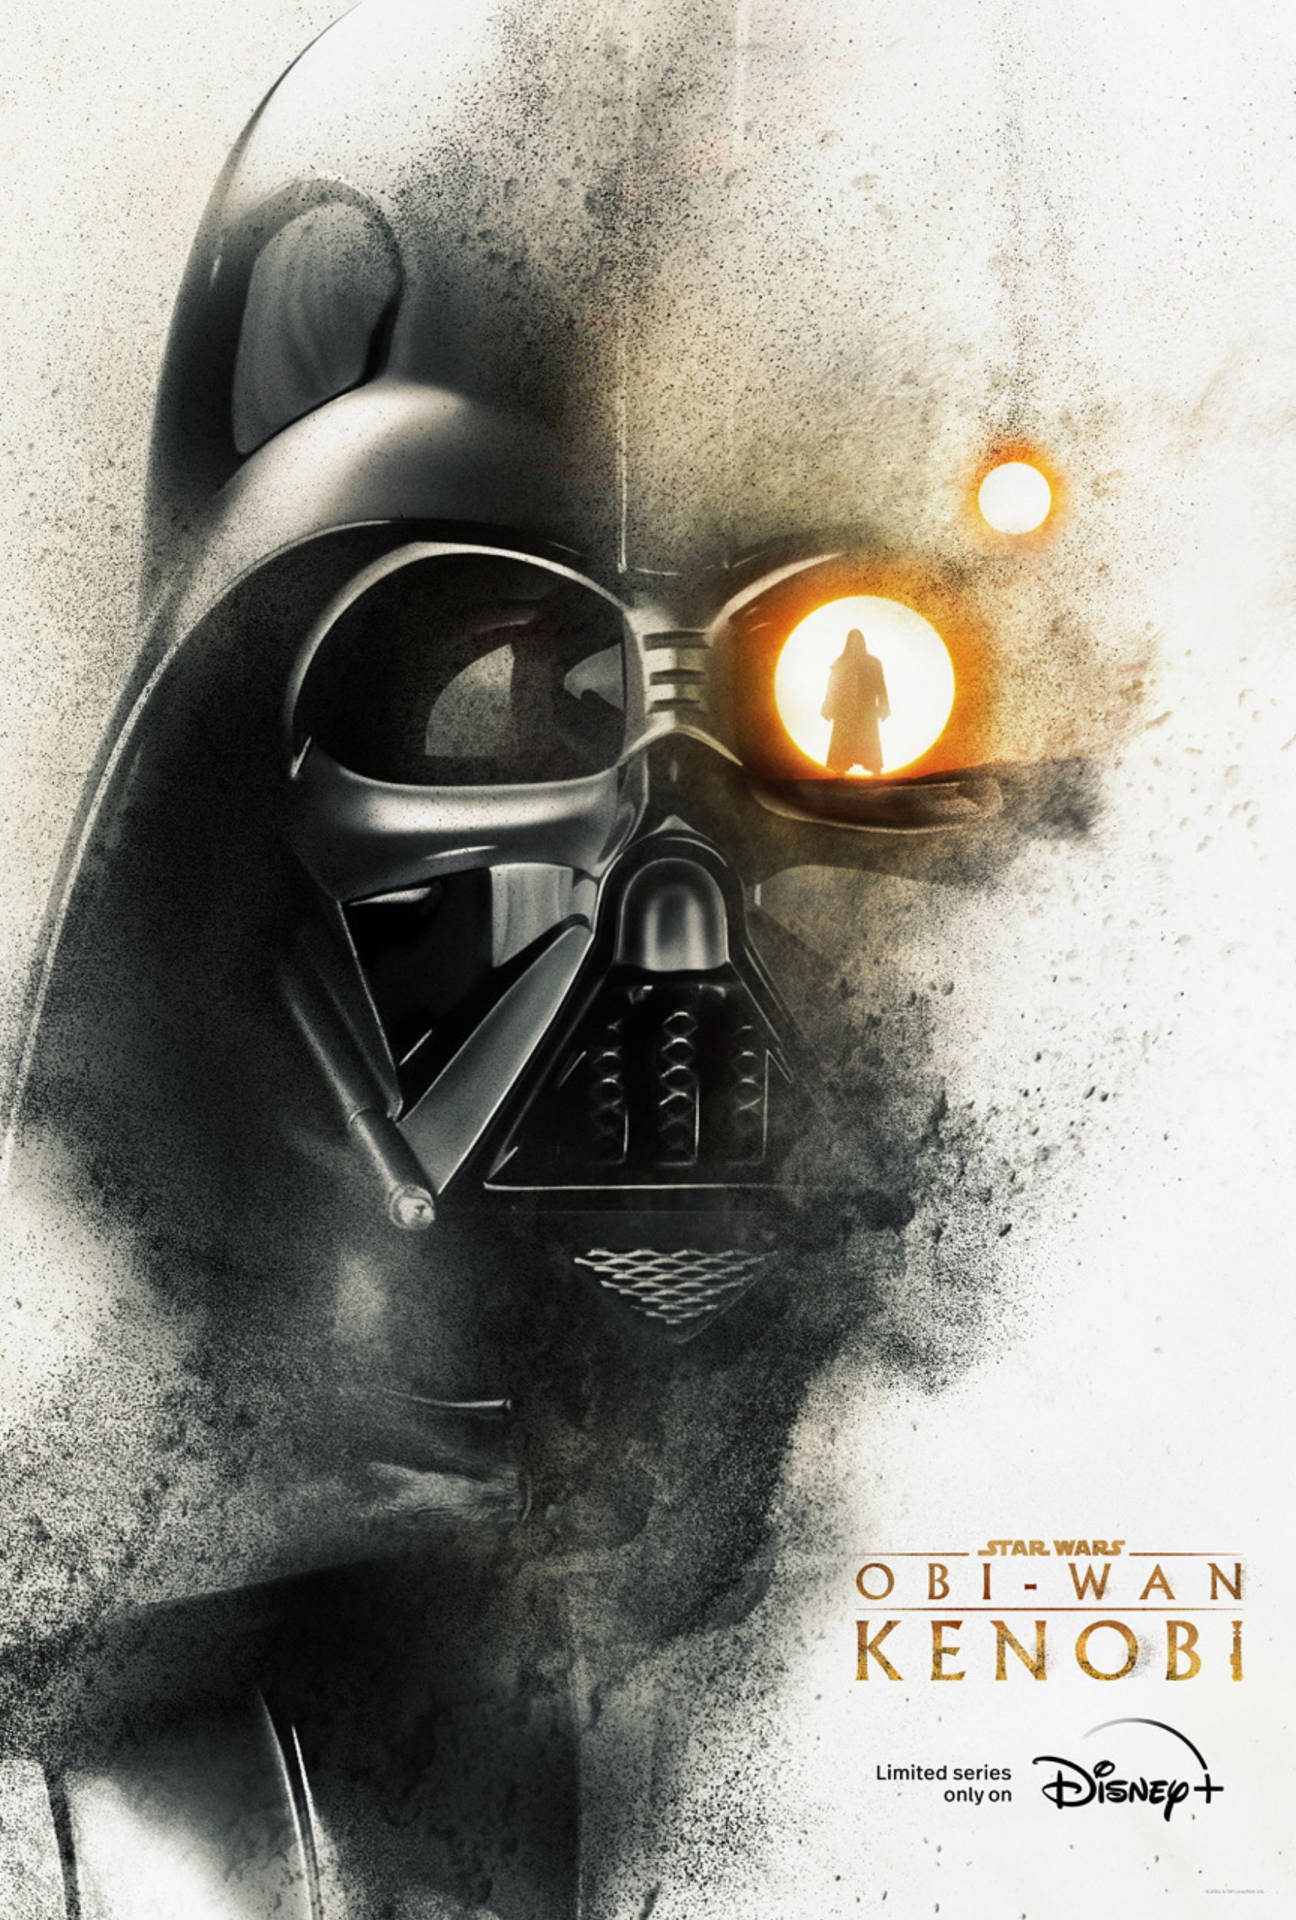 Obi Wan Kenobi Darth Vader Wallpaper